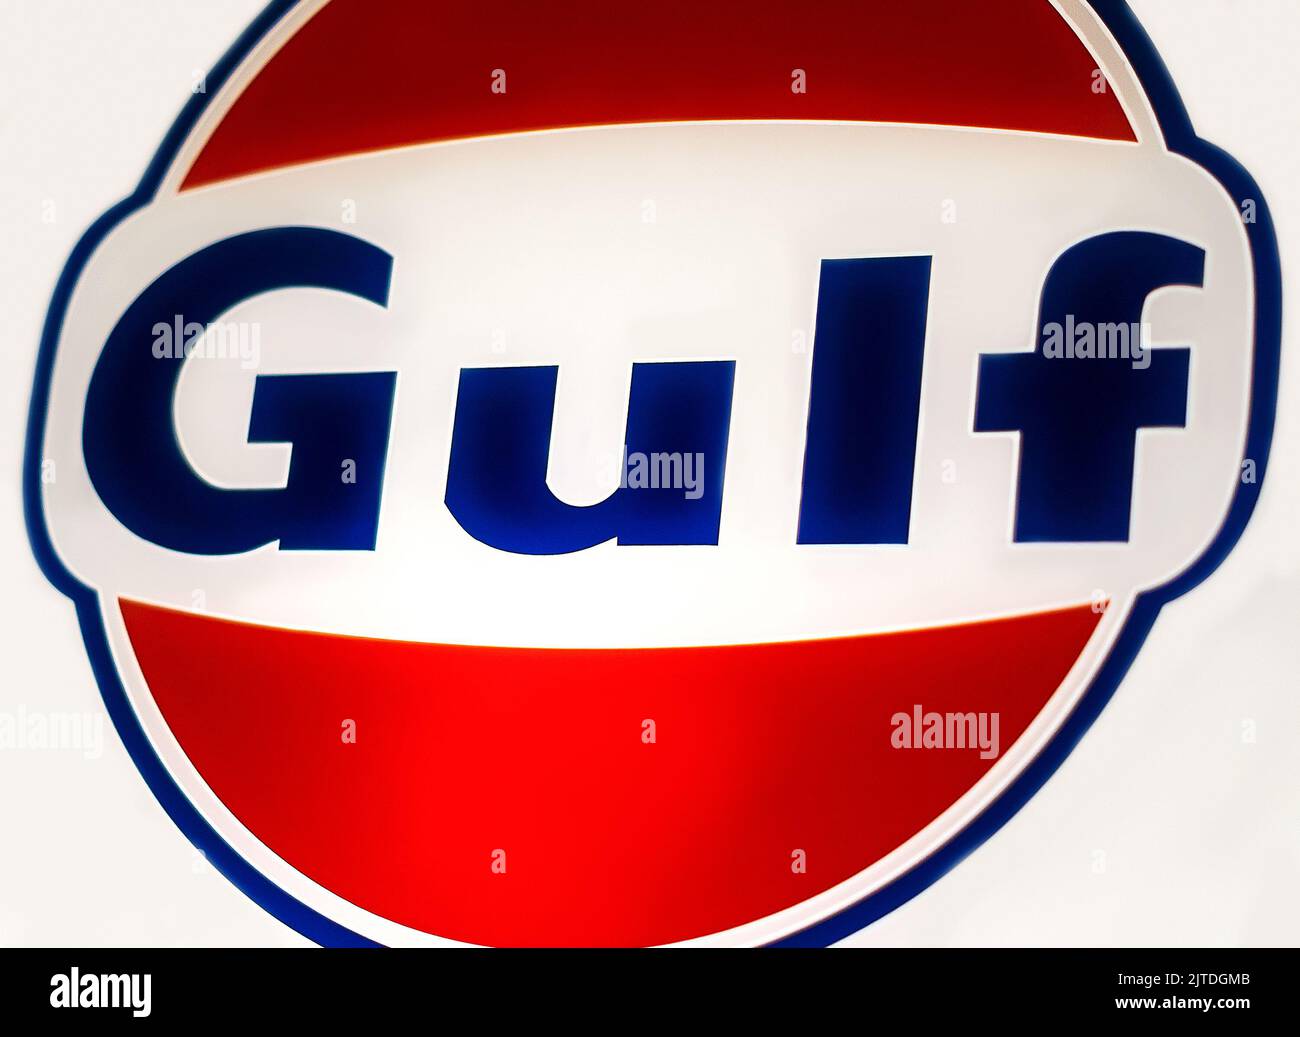 Gulf Oil Company beleuchtete Schild in traditionellen orangen und blauen Farben auf der Ausstellung in Baku, Aserbaidschan - 12. april 2017 Stockfoto